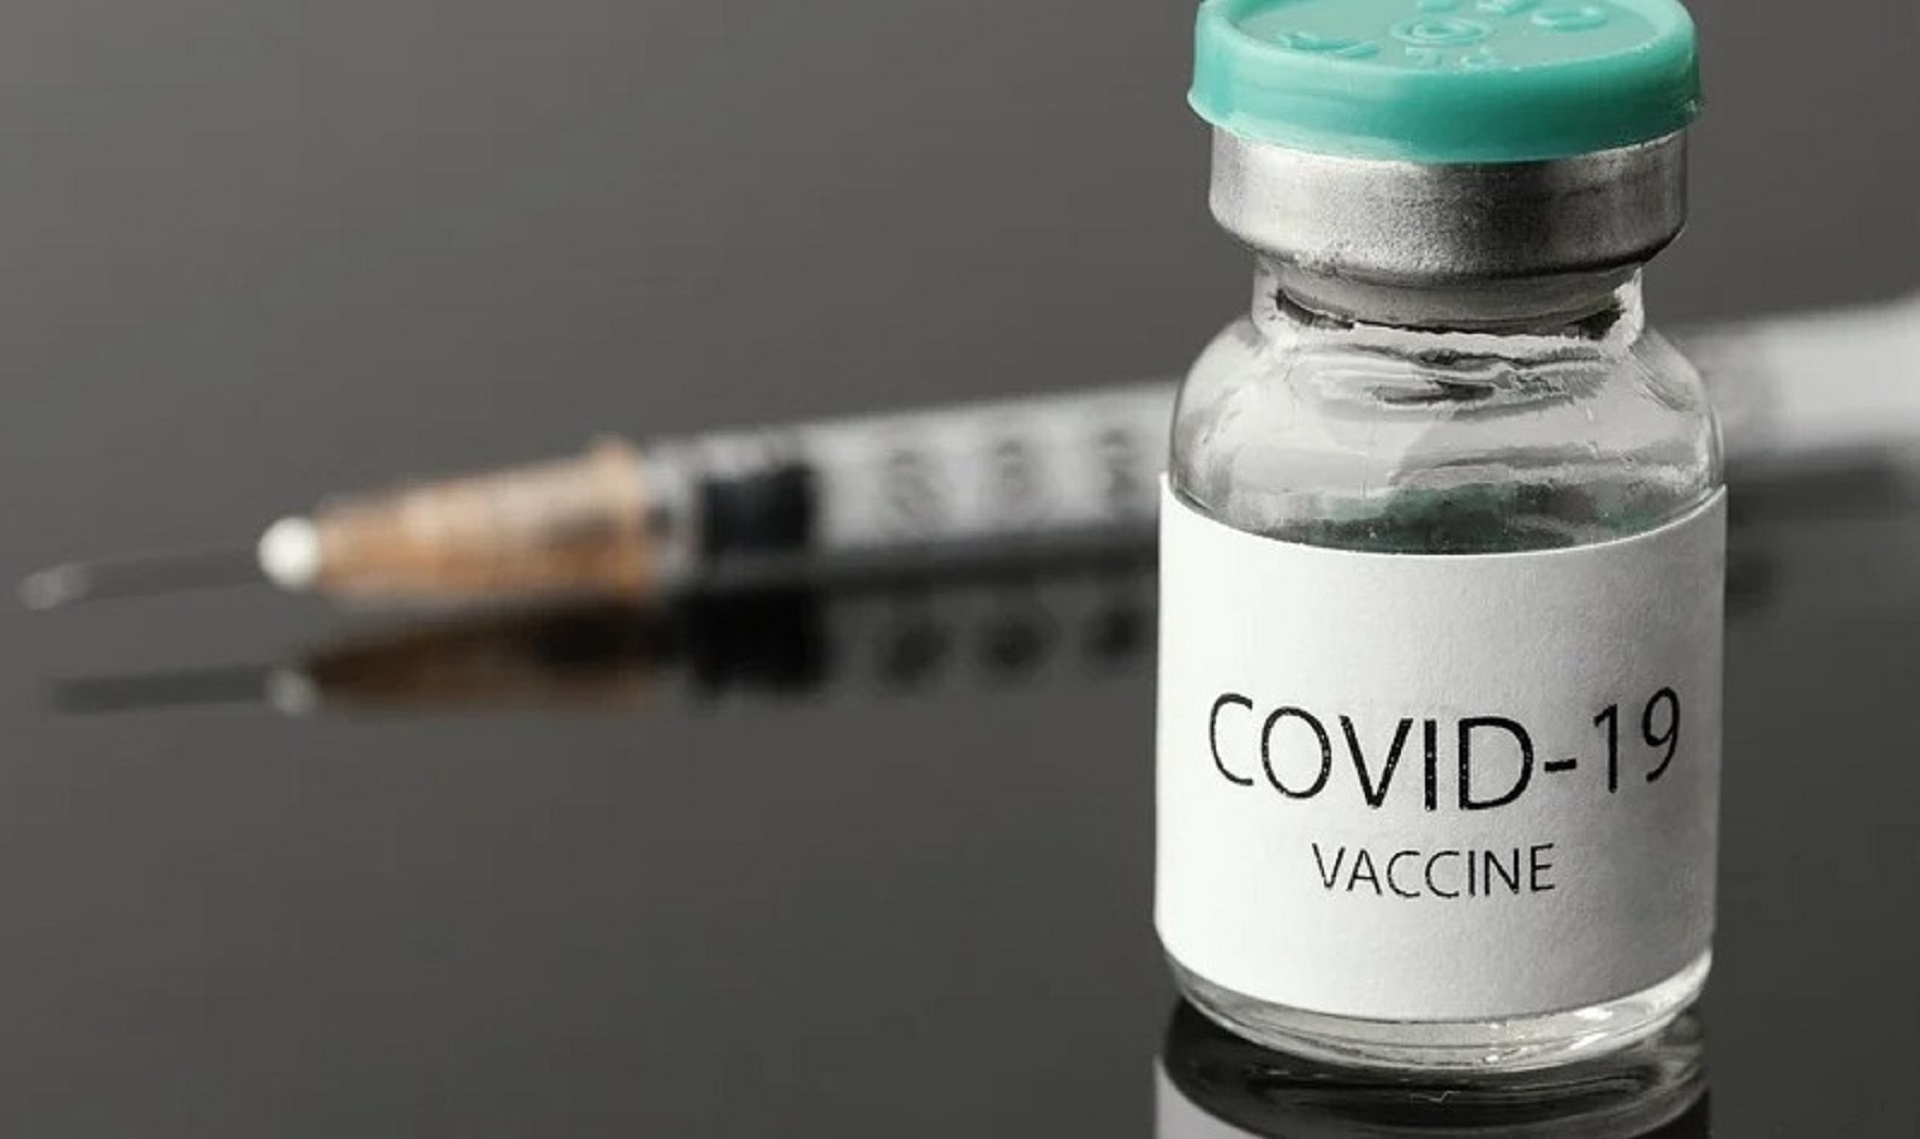 Muore due giorni dopo il vaccino: aperto fascicolo in Procura